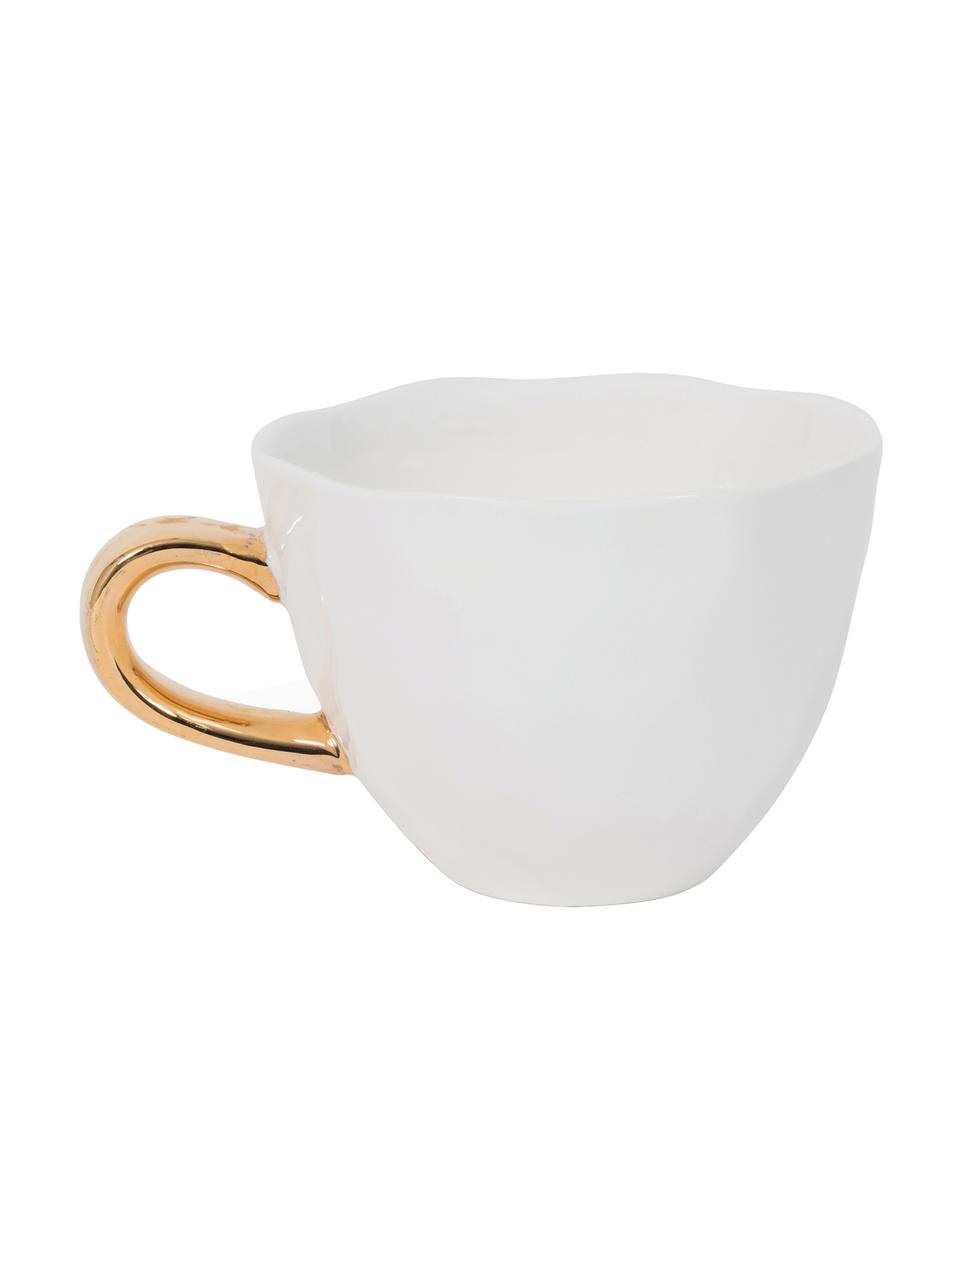 Tasse Good Morning mit goldenem Griff, Steingut, Weiß, Goldfarben, Ø 11 x H 8 cm, 350 ml